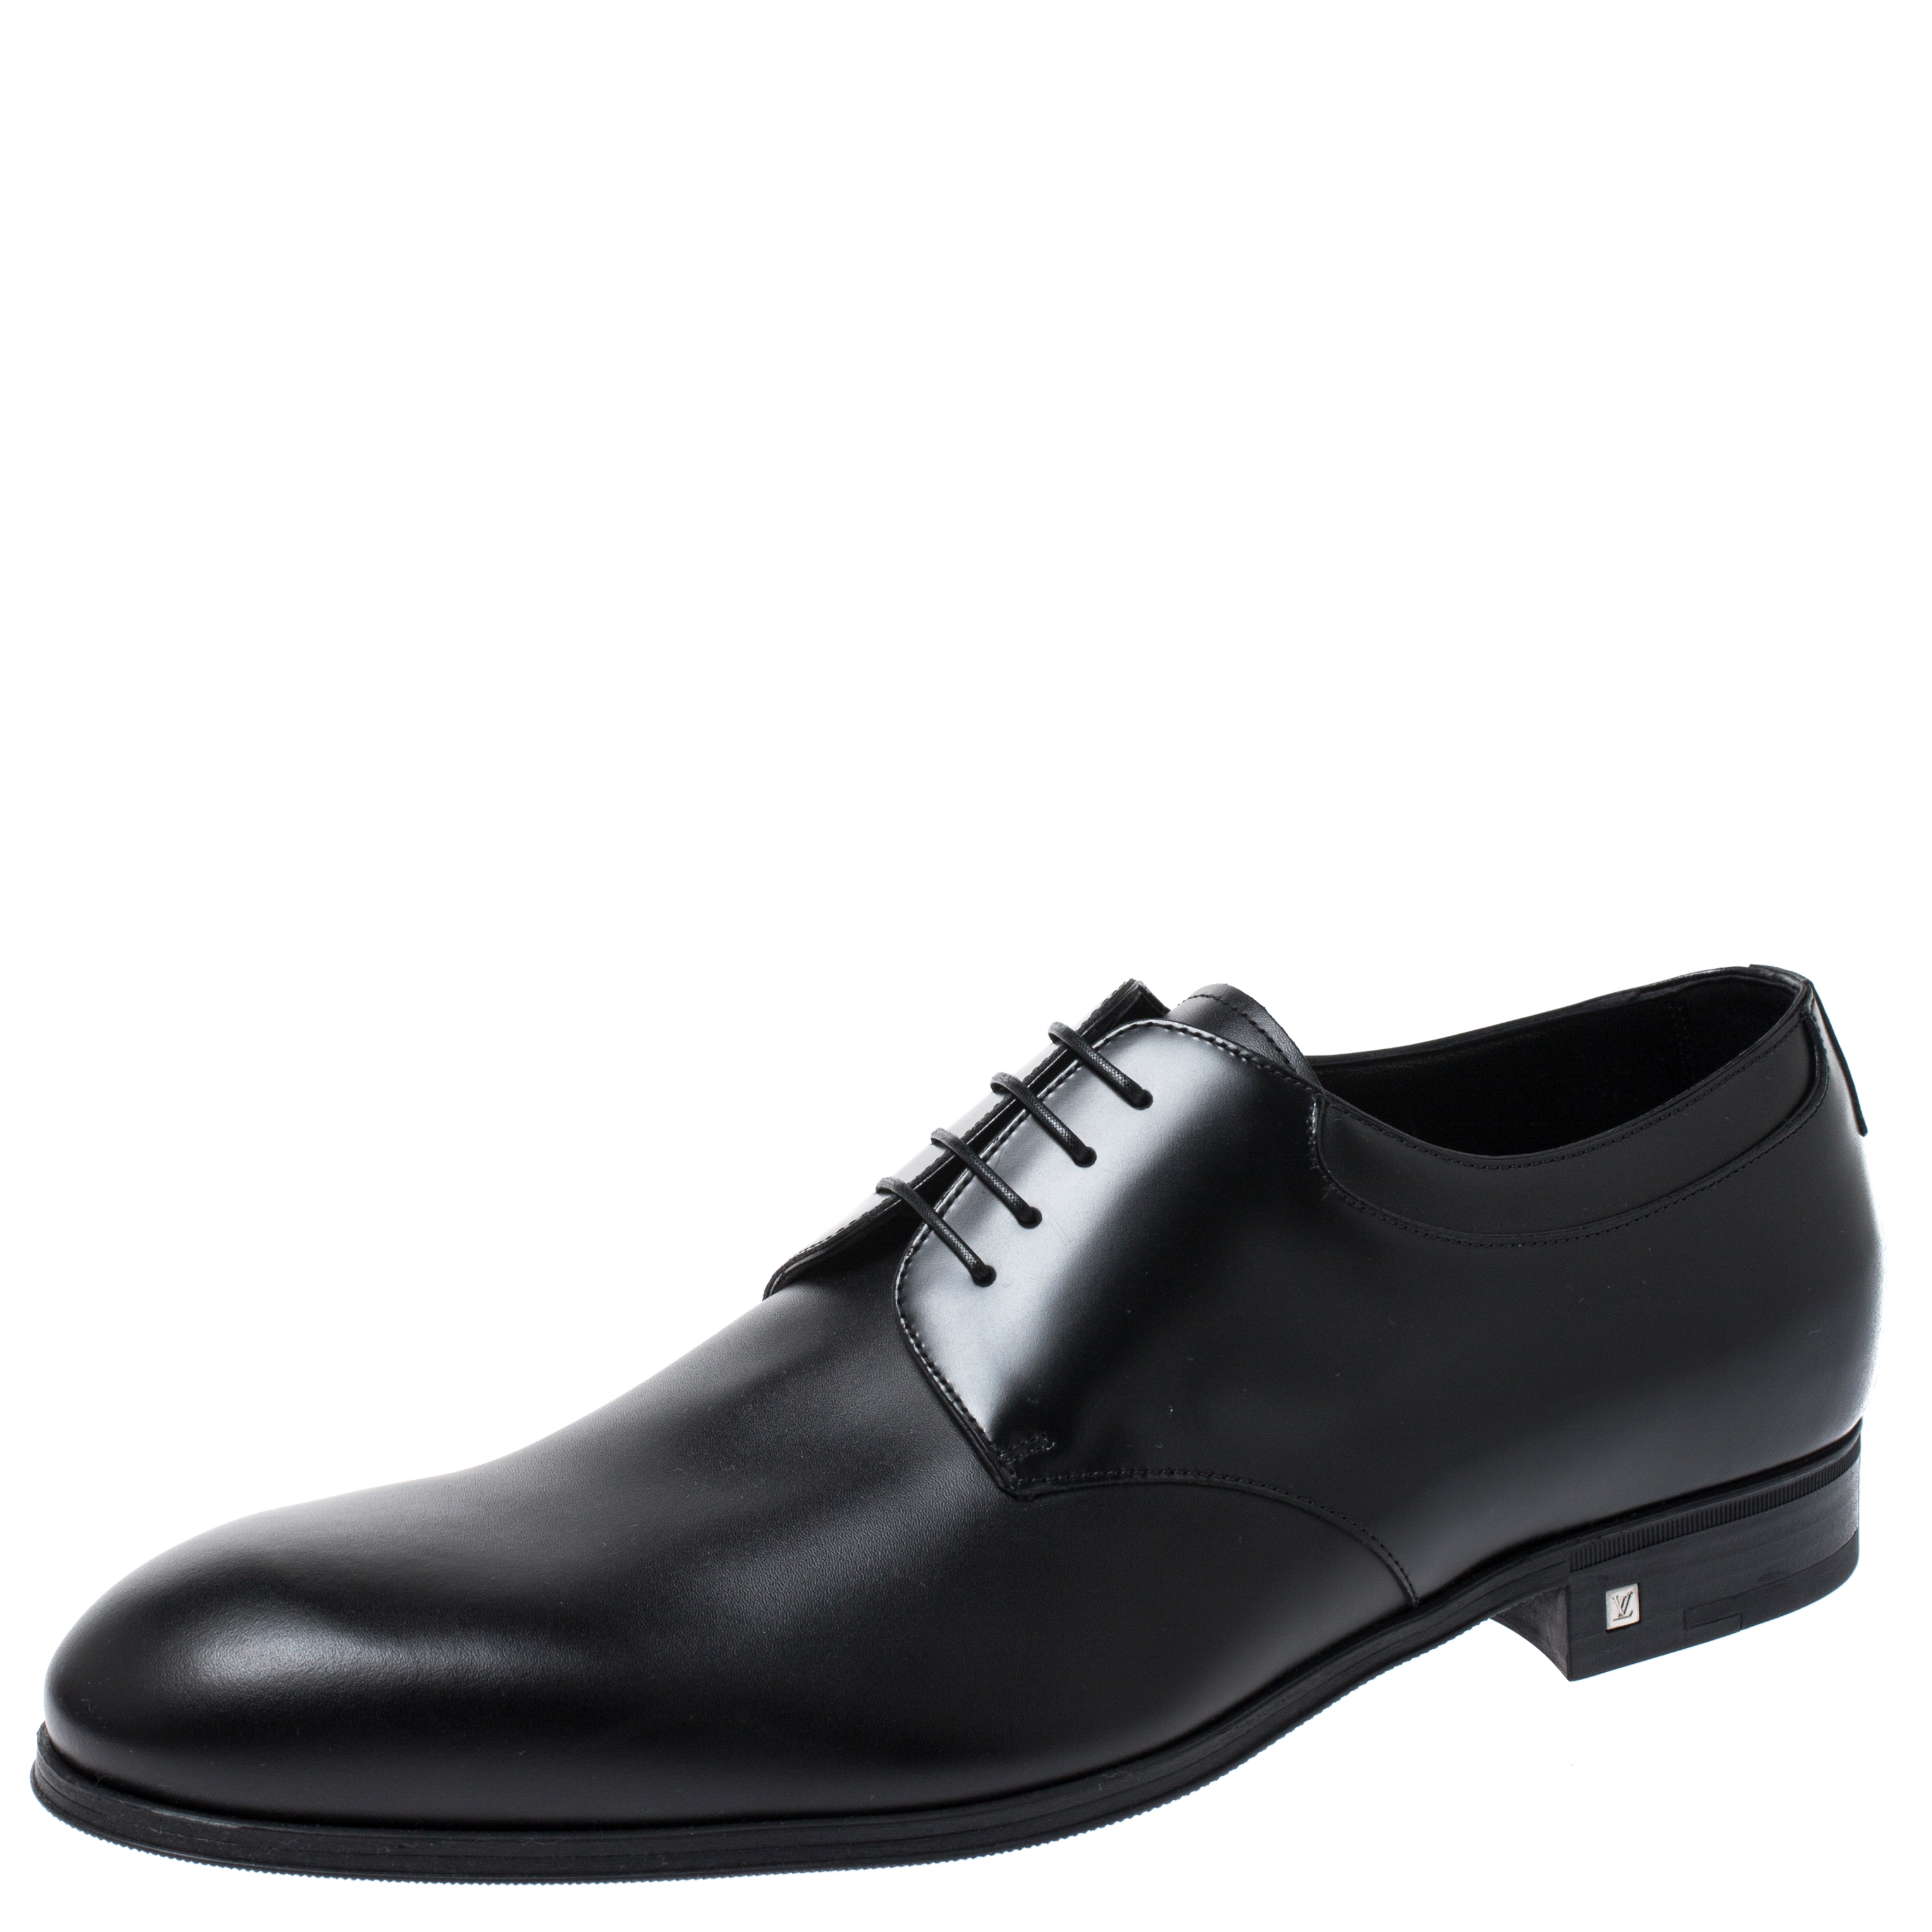 Louis Vuitton, Shoes, Louis Vuitton Lv Dress Shoes Oxford Derby Epi  Leather Brown Mens Size Uk 7 Us 8